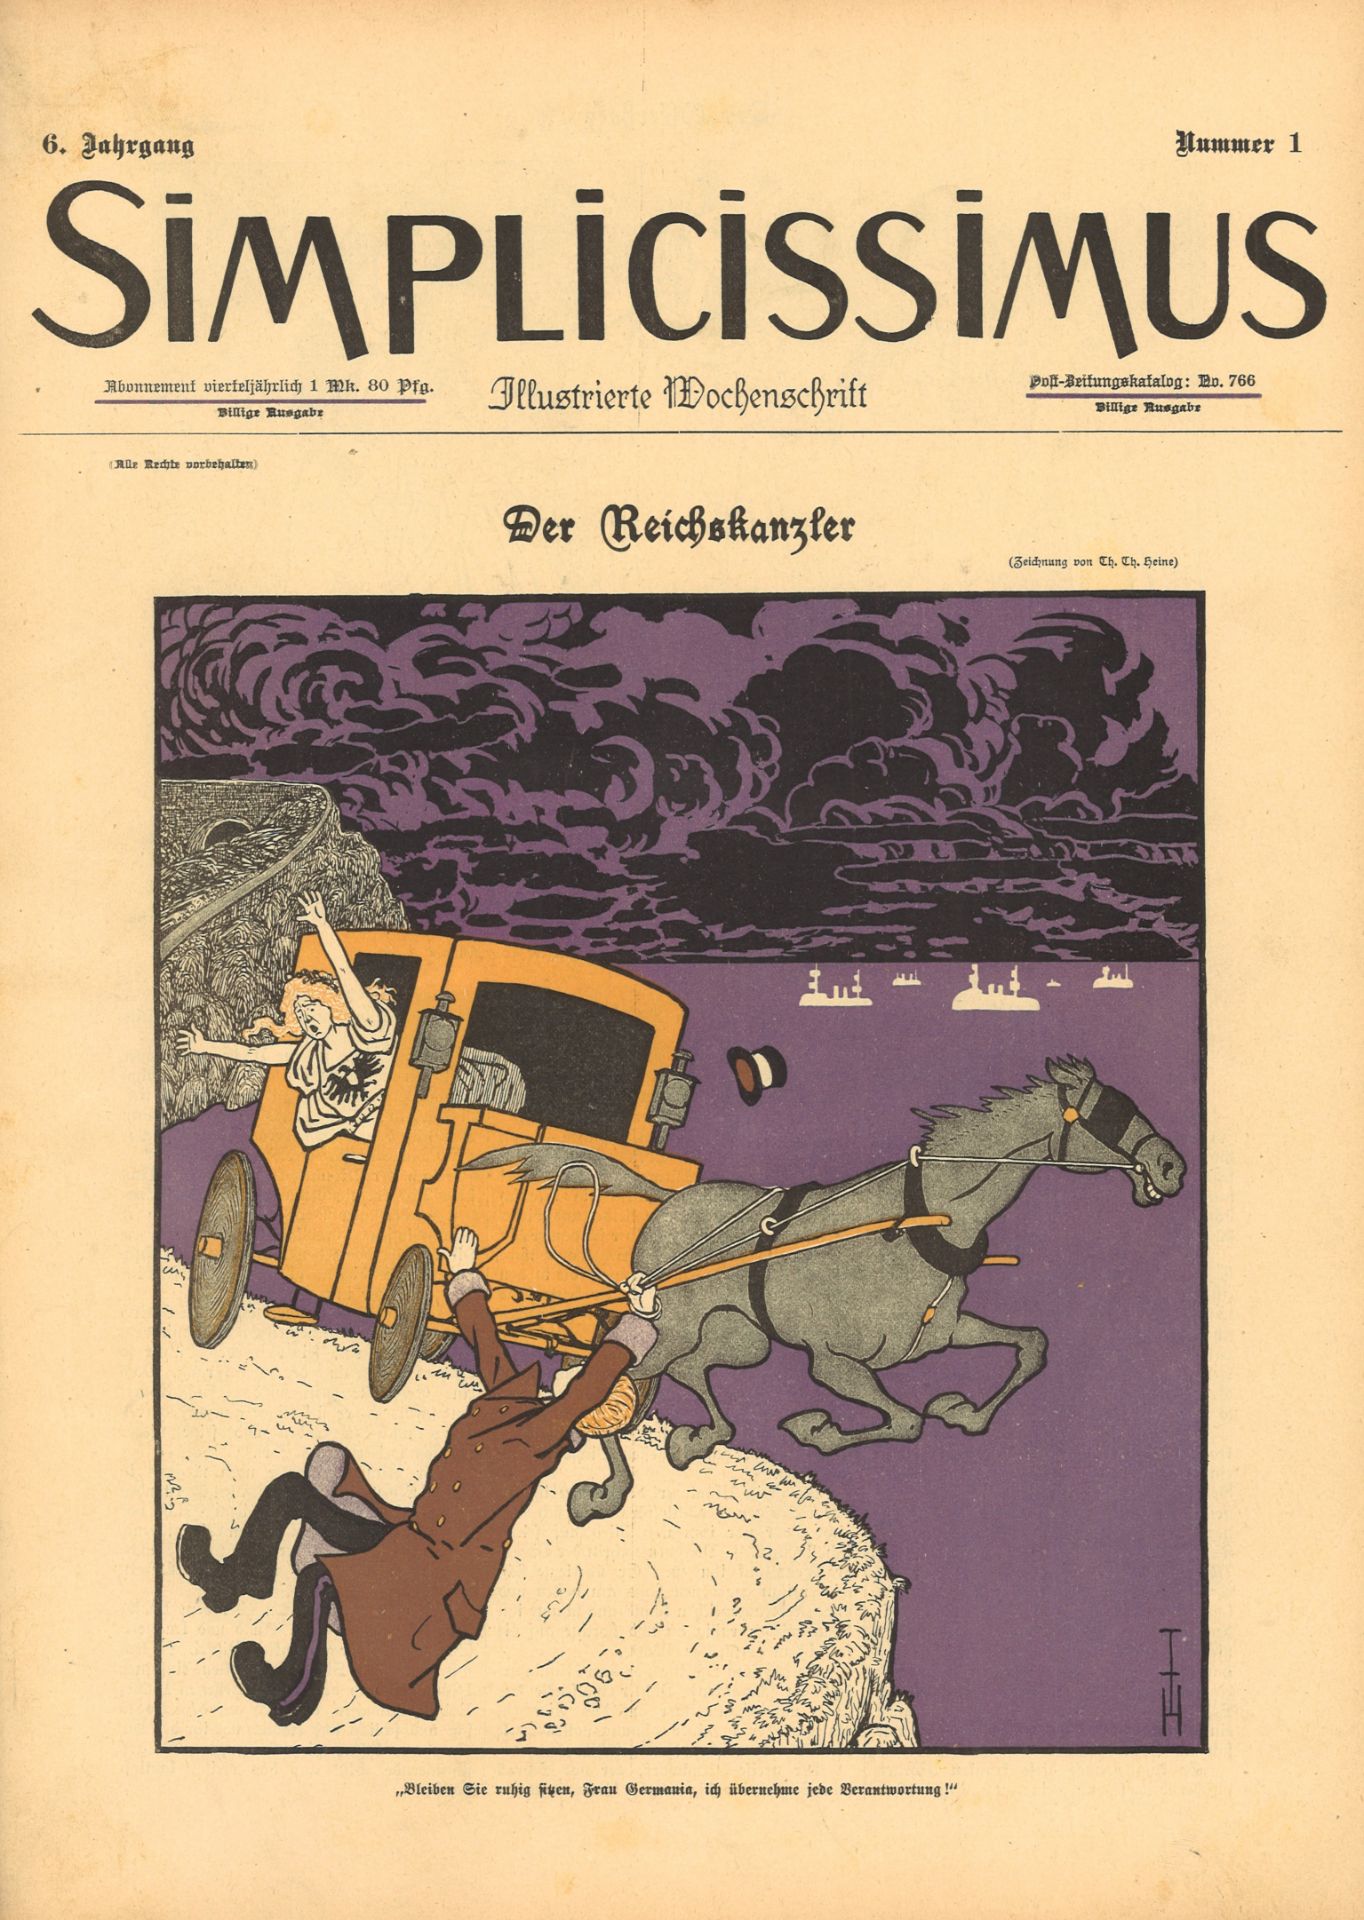 Simplicissimus 6. Jahrgang 1901 Illustrierte Wochenschrift Nr. 1-53, gebunden. Guter Zustand